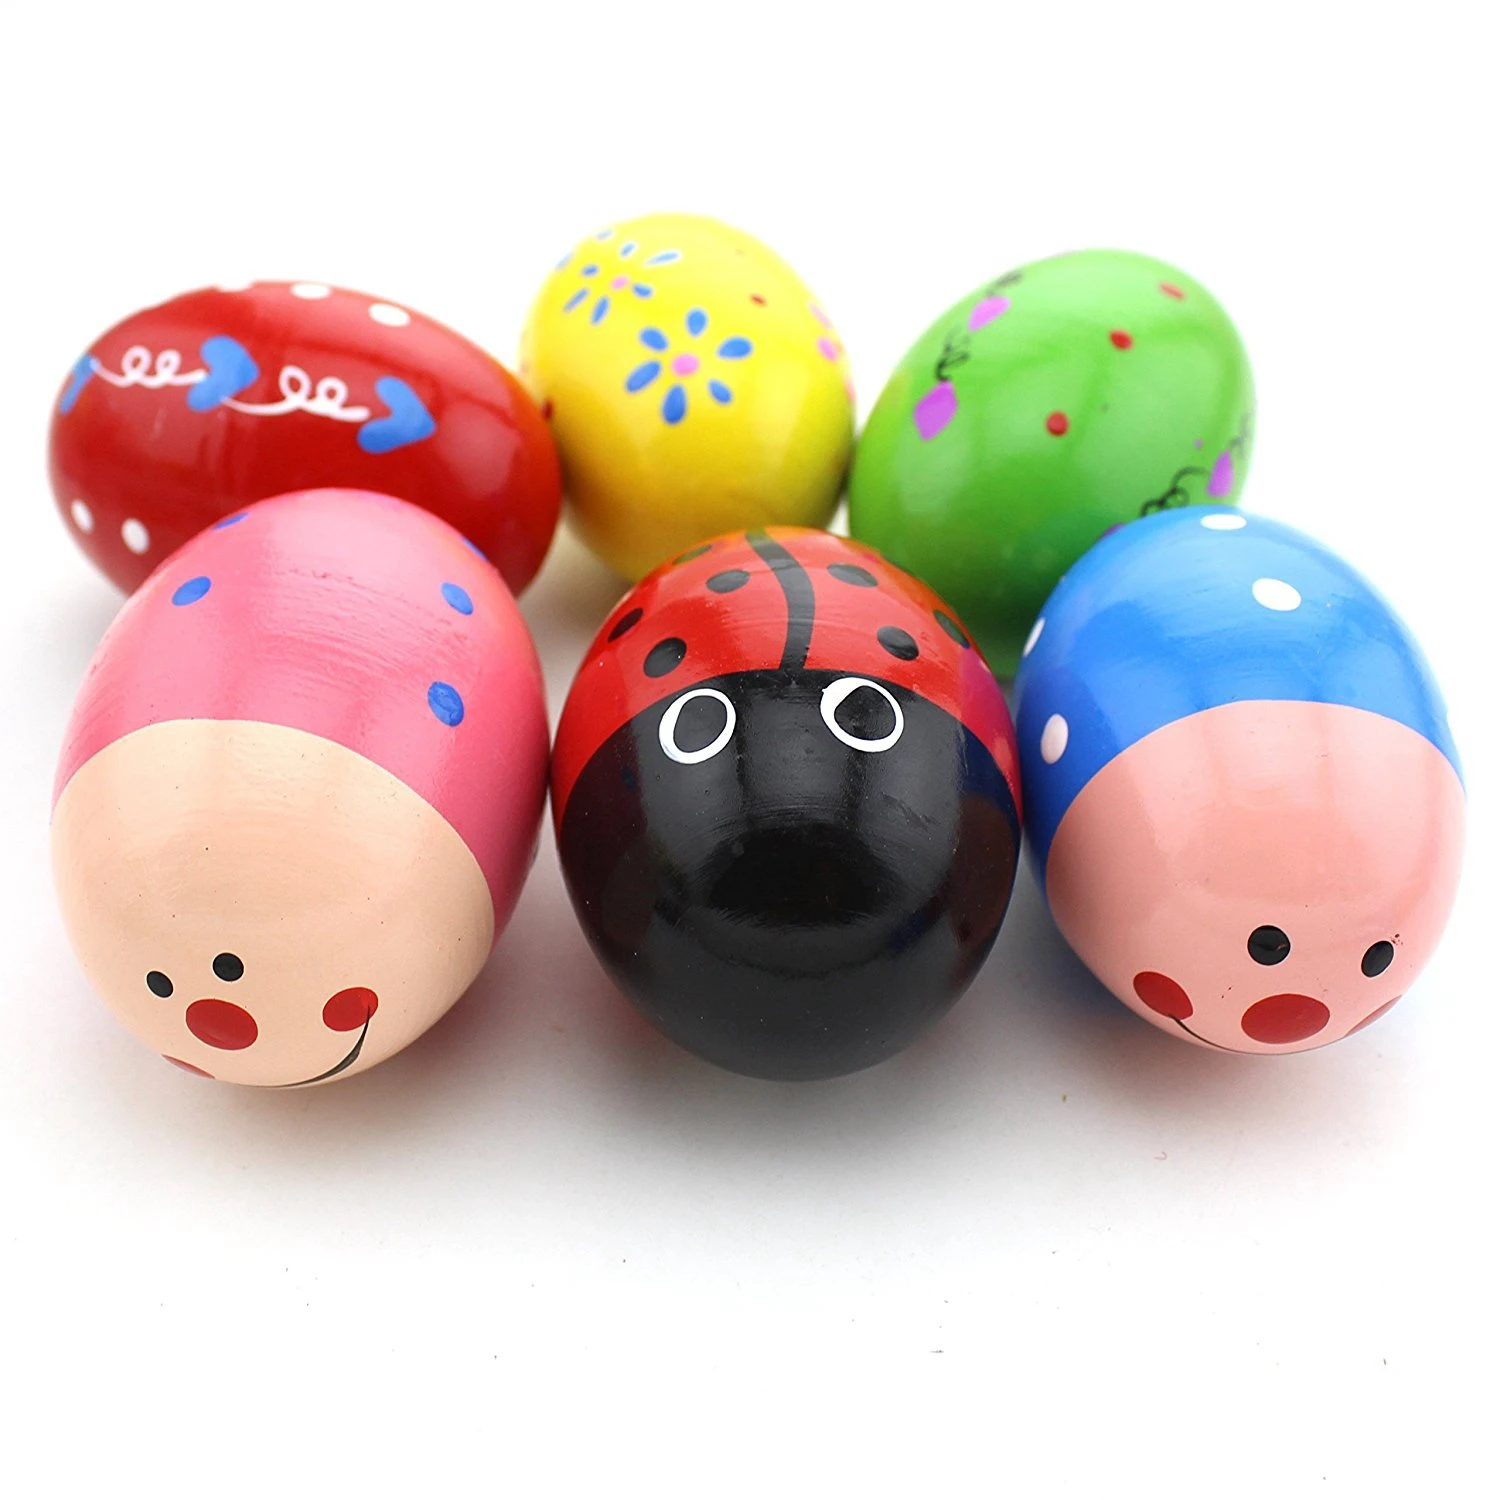 BMDT-набор из 6 деревянная перкуссия игрушка, музыкальное яйцо maracas яичные шейкеры для детей